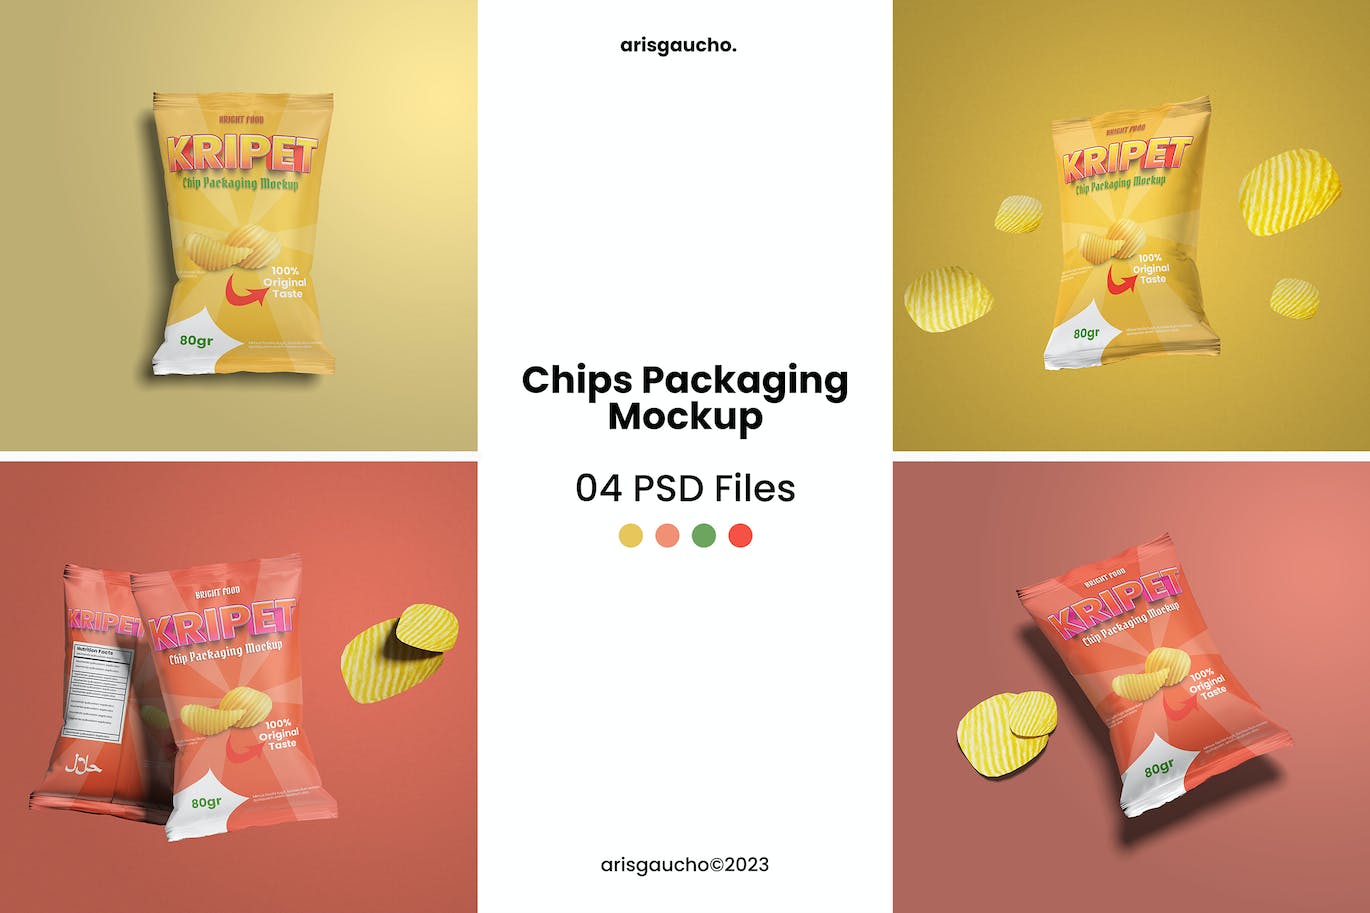 薯片食品包装样机图psd模板 Chips Packaging Mockup 样机素材 第1张